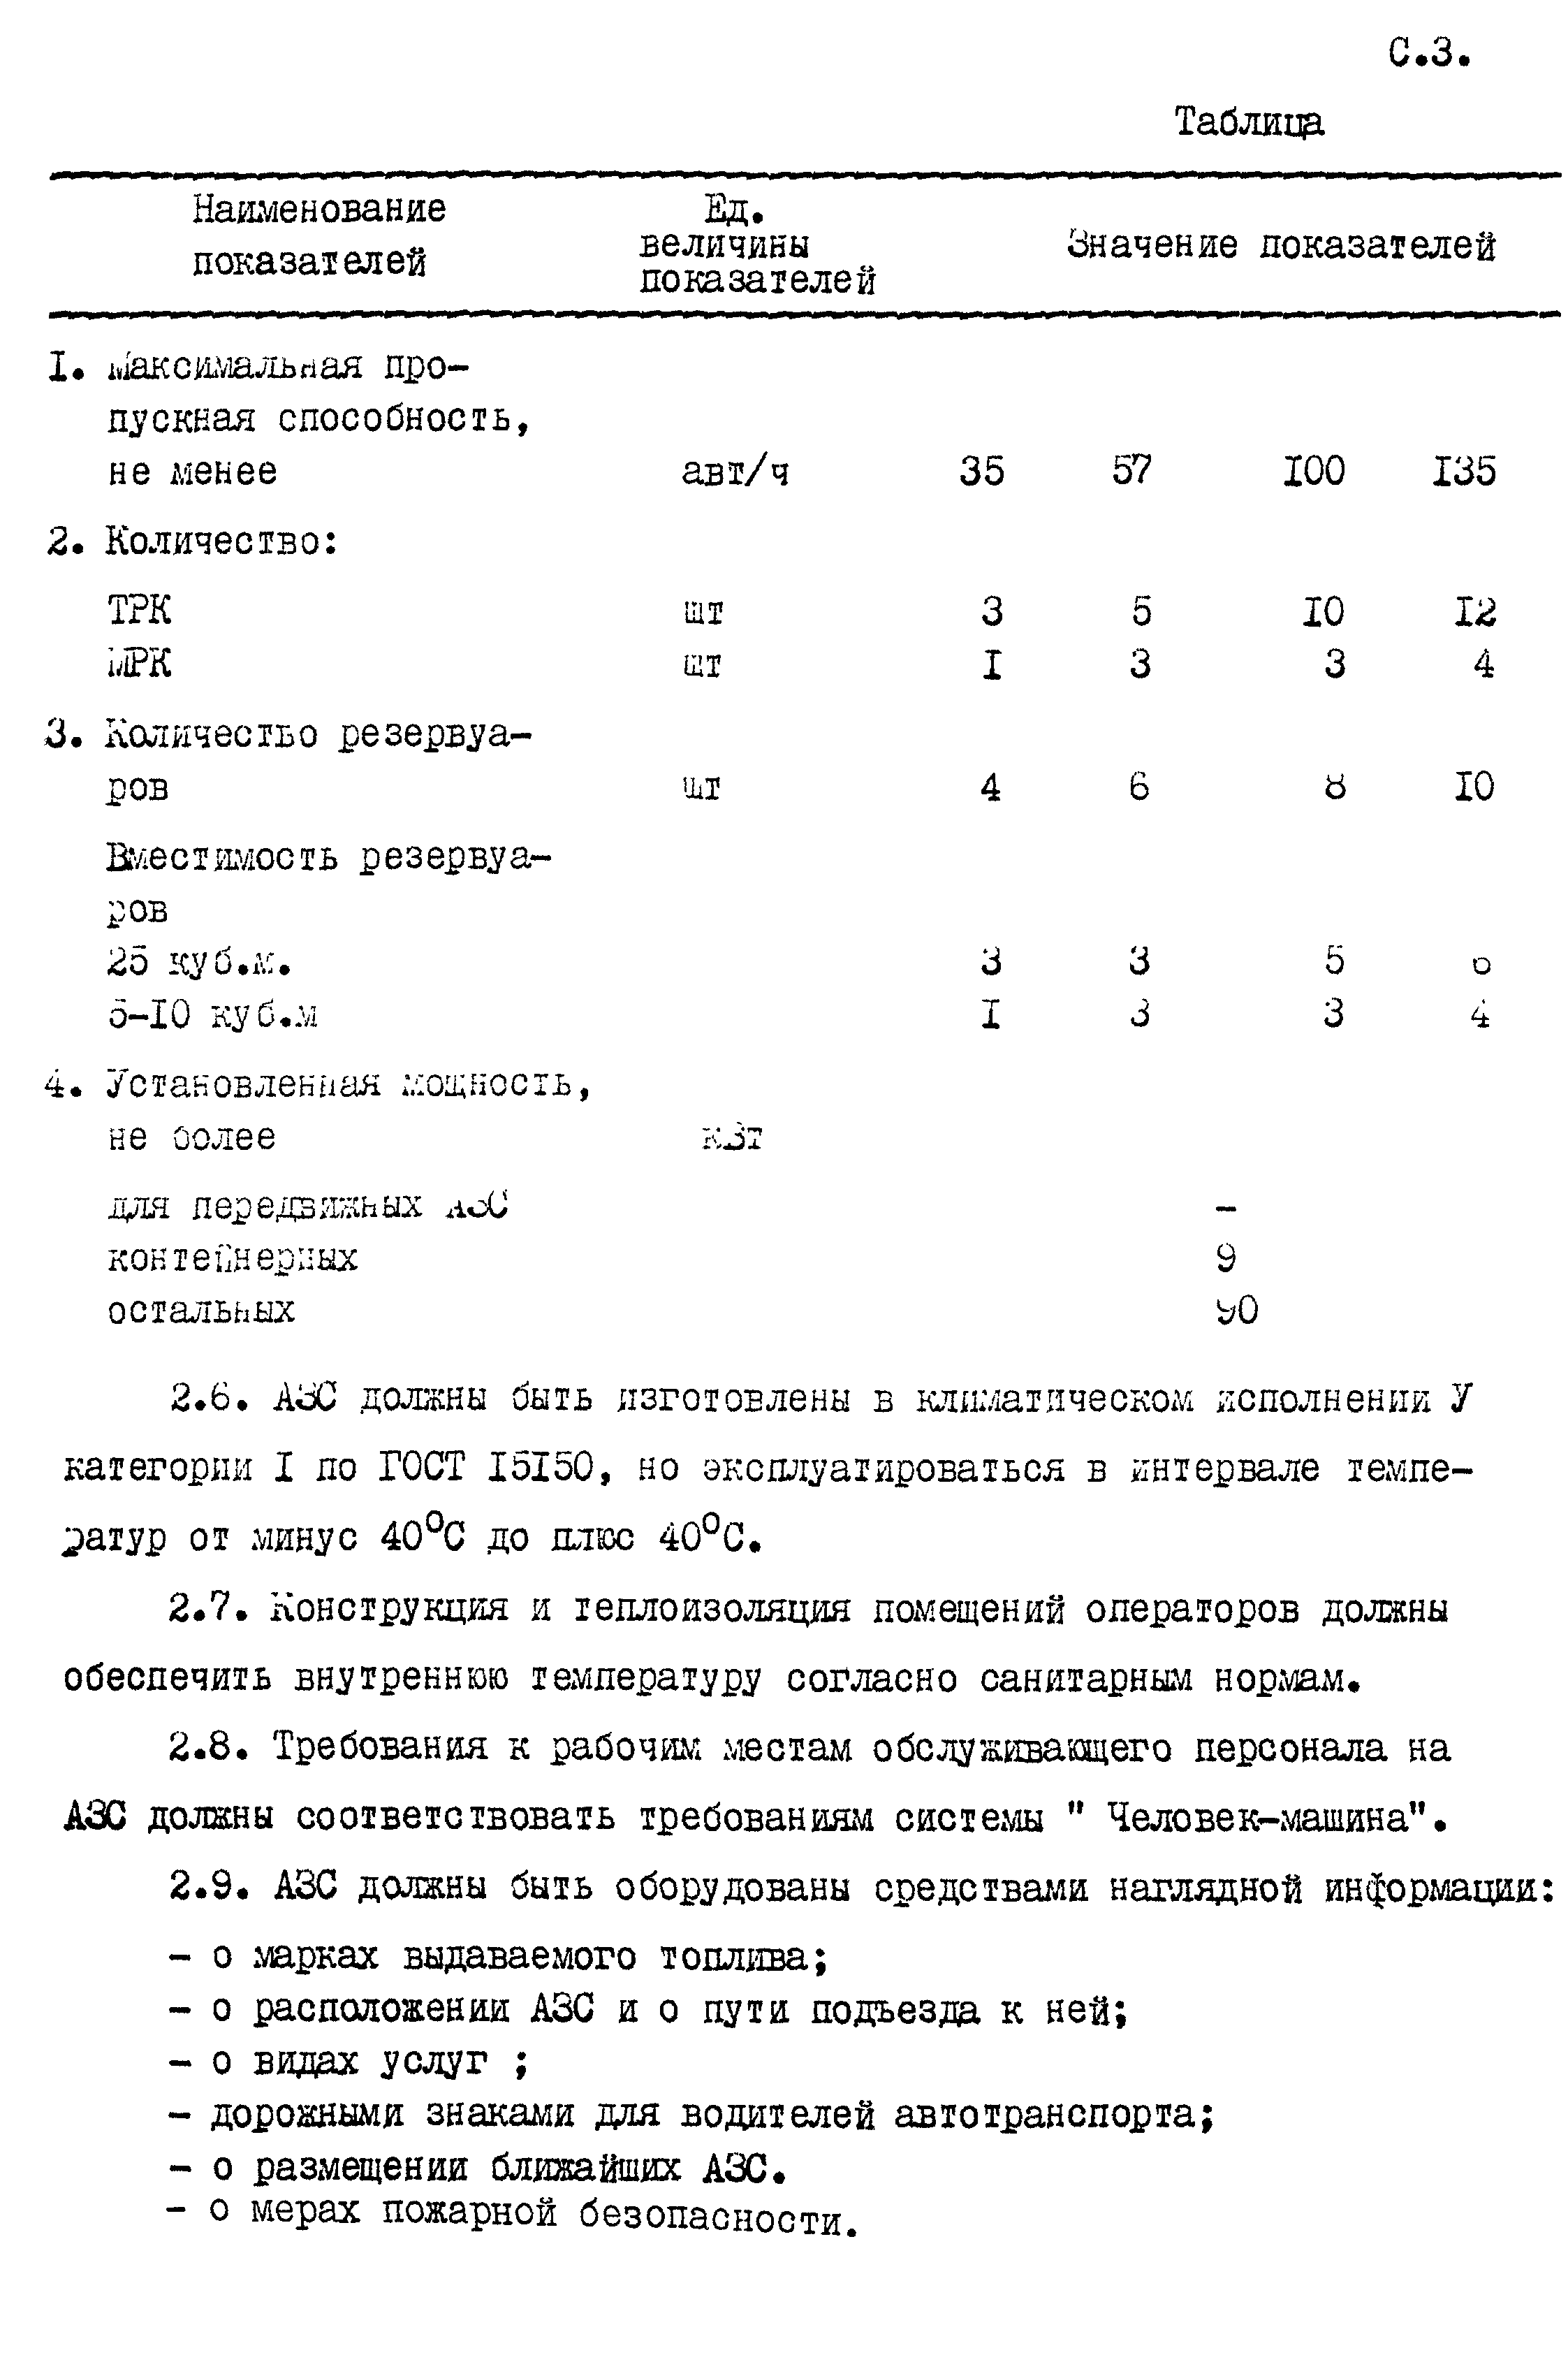 РСТ РСФСР 778-91